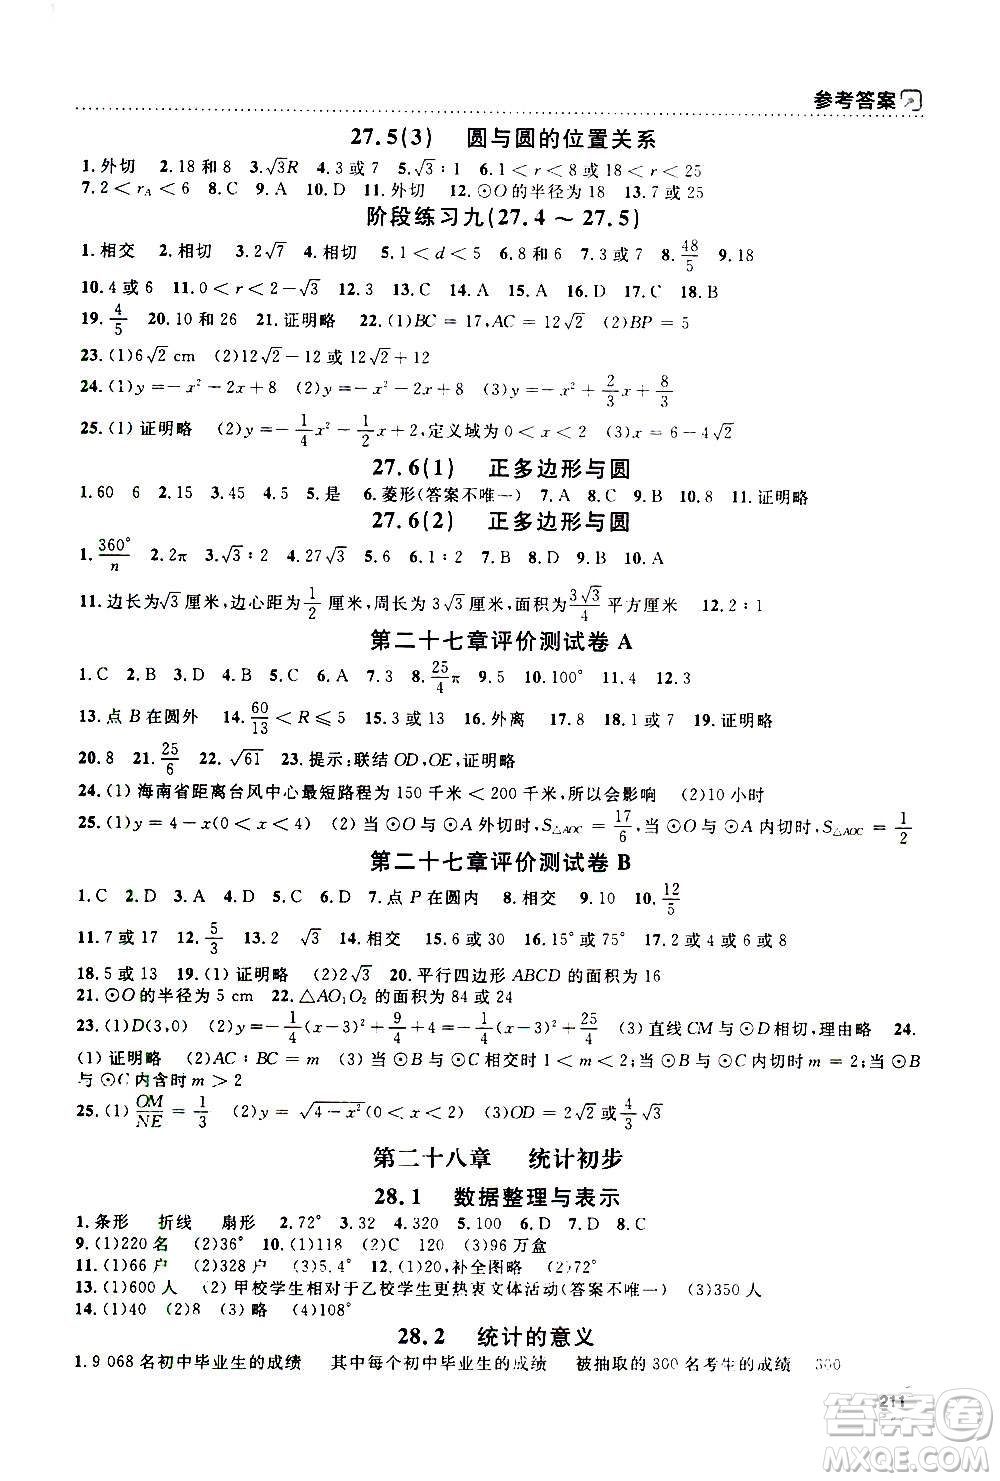 上海大学出版社2020年钟书金牌上海作业数学九年级上册答案